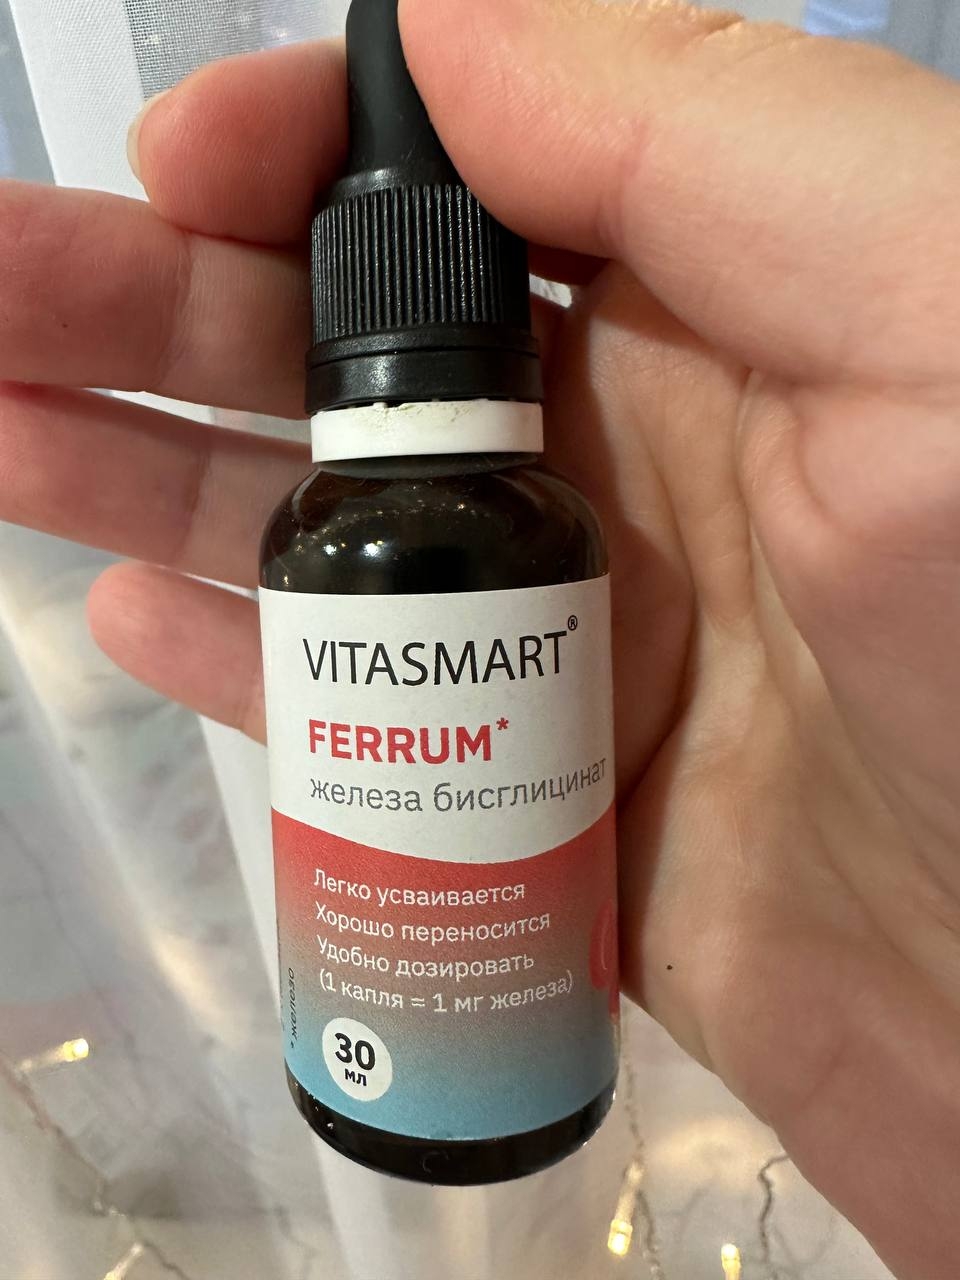 Железо хелат Vitasmart Ferrum, жидкие витамины . - Vitasmart Ferrum - лучшее железо!